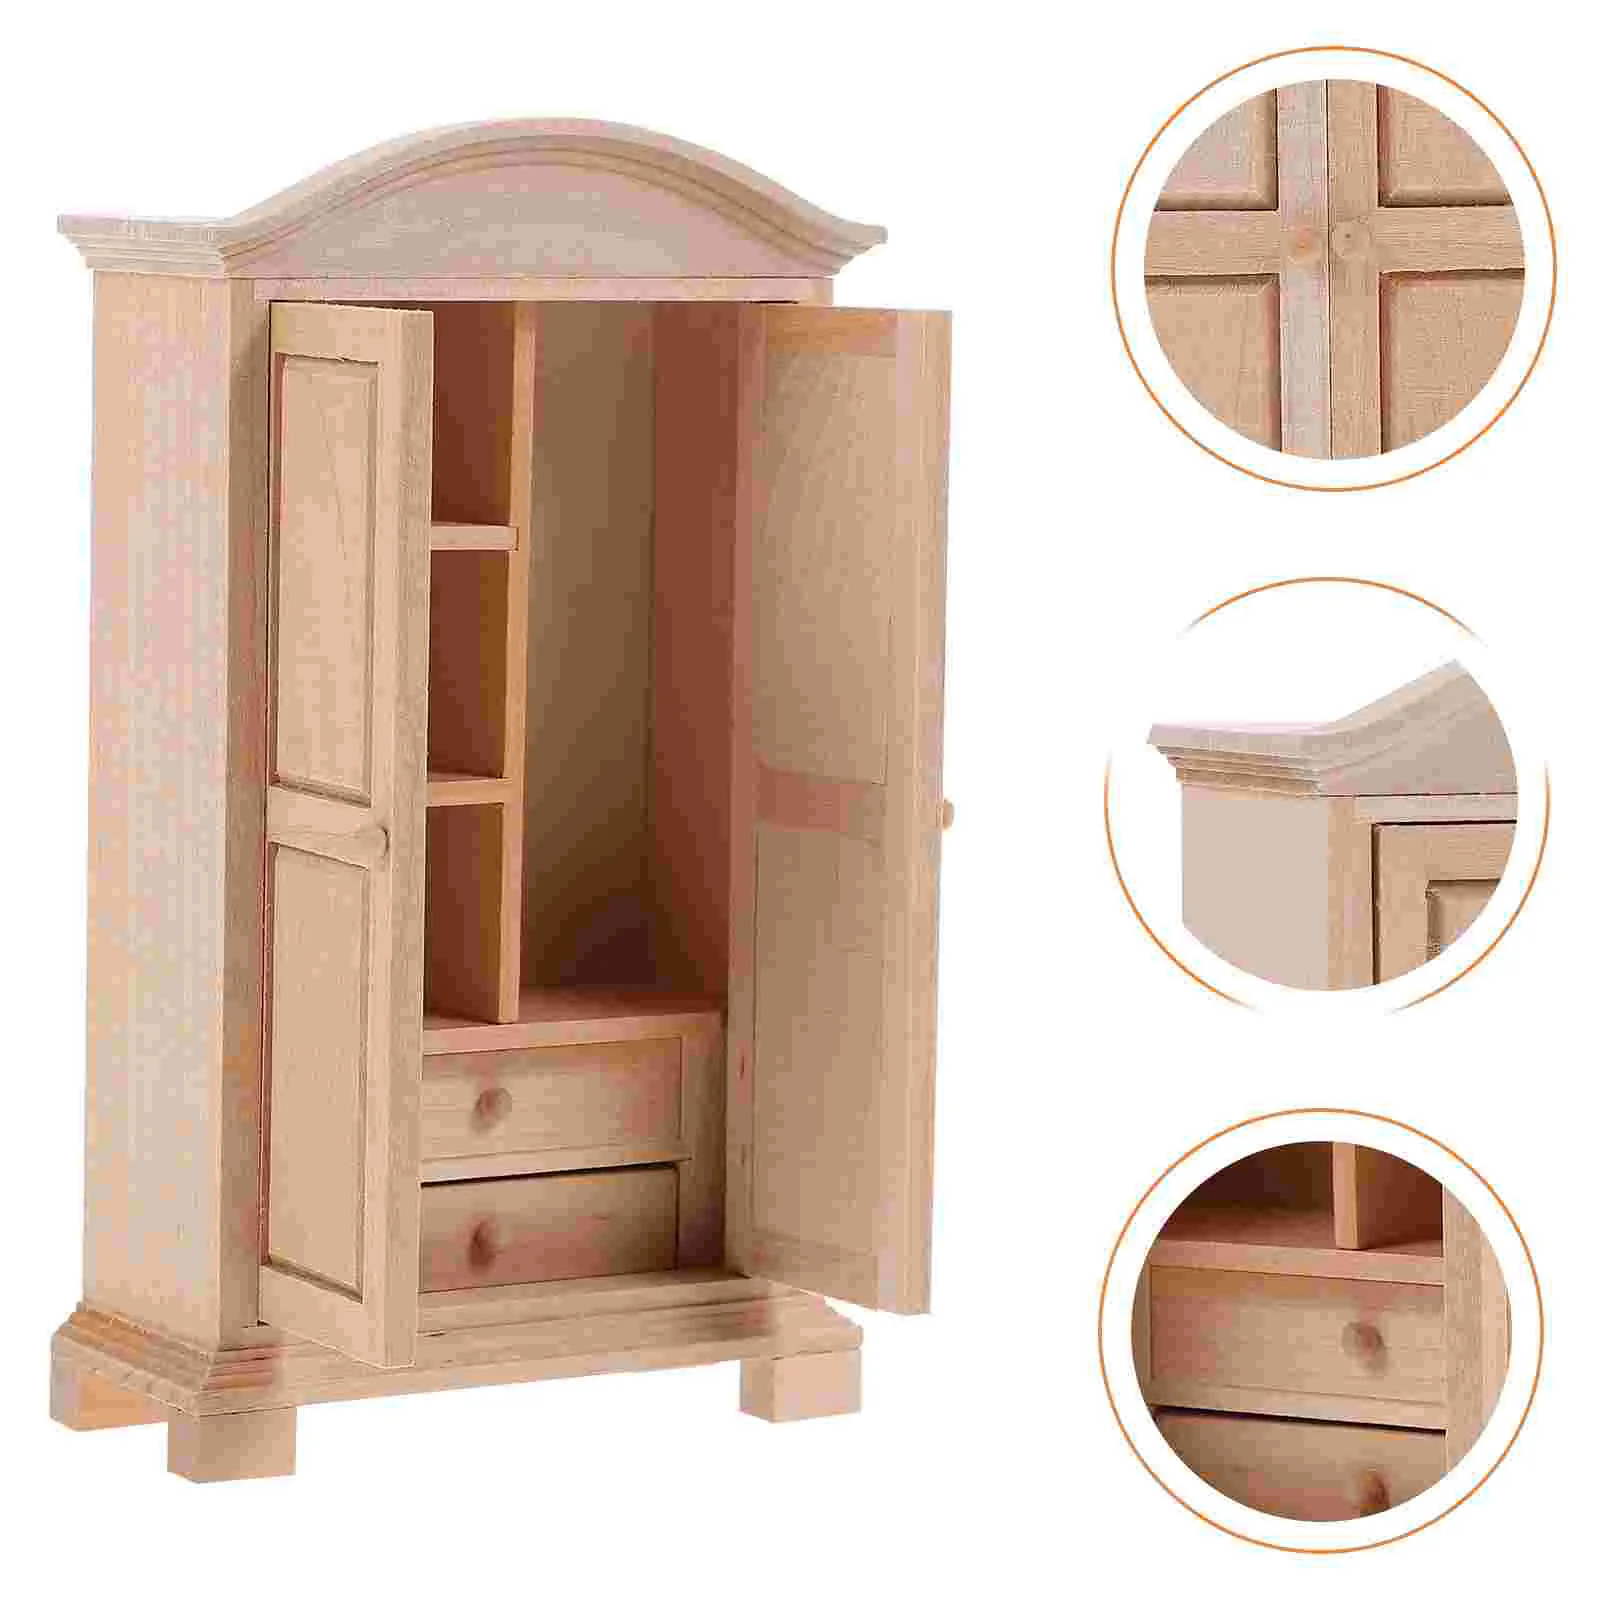 

Вешалки для одежды, миниатюрный деревянный шкаф для кукольного домика, модель мебели с двумя дверцами в масштабе 1:12